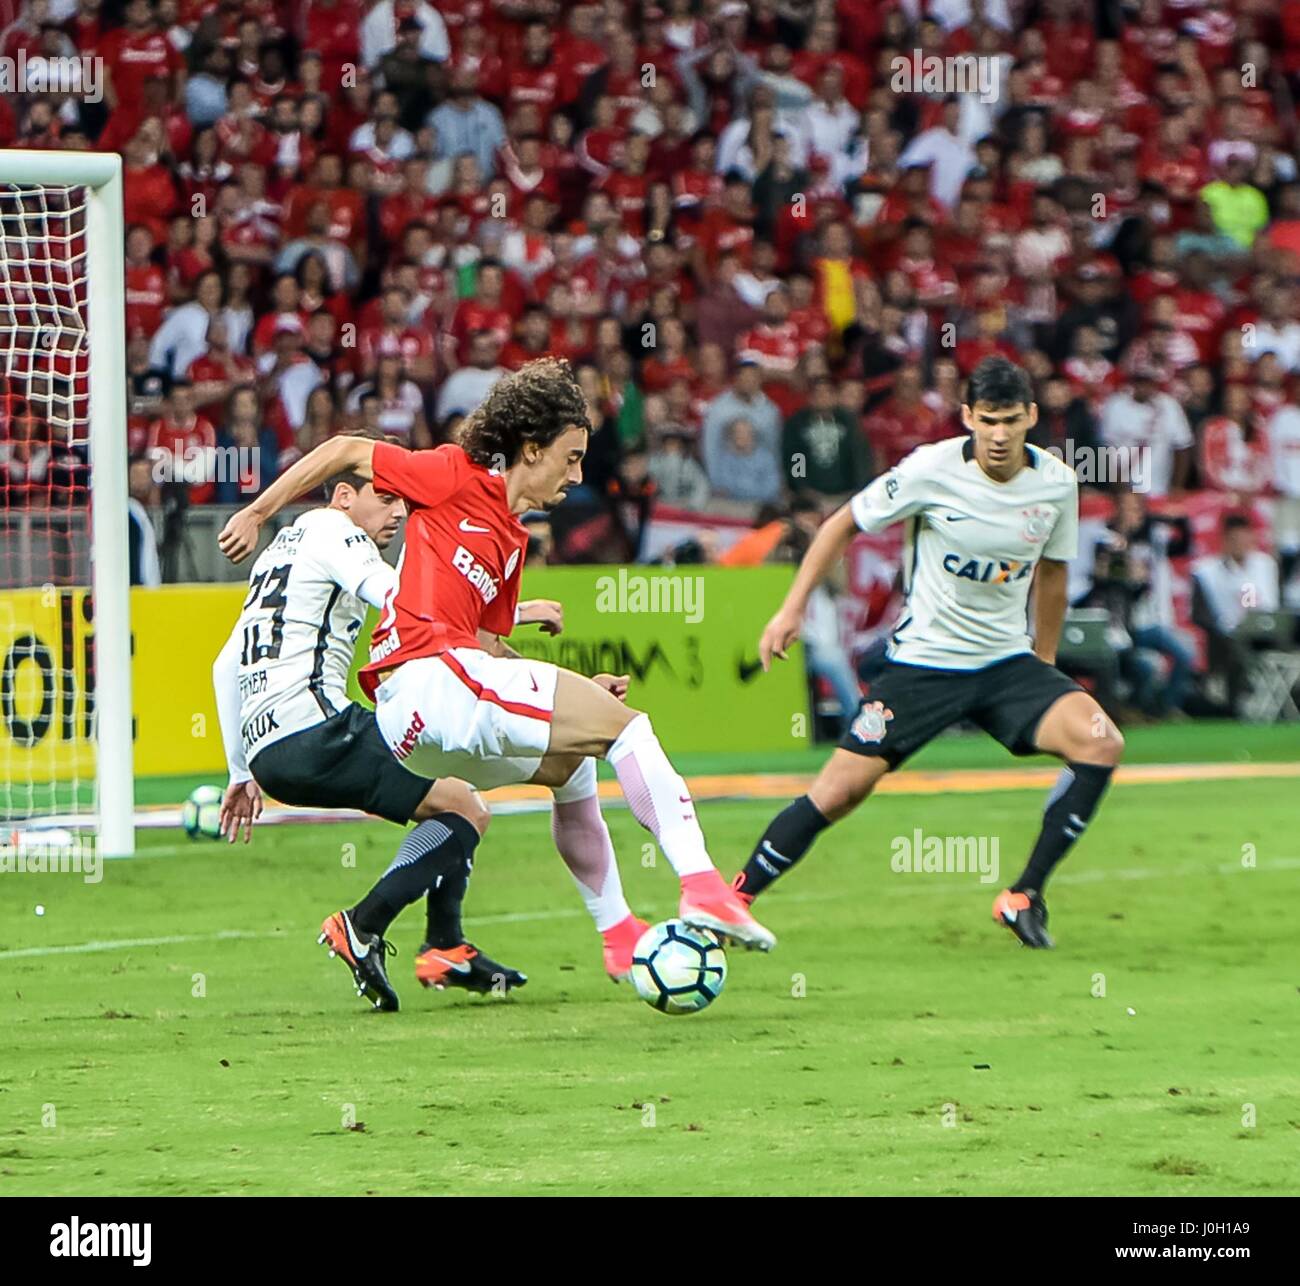 Porto Alegre, Brazil. 12th Apr, 2017. Rio Stadium, Porto Alegre/RS. Credit: Eldio Suzano/FotoArena/Alamy Live News Stock Photo